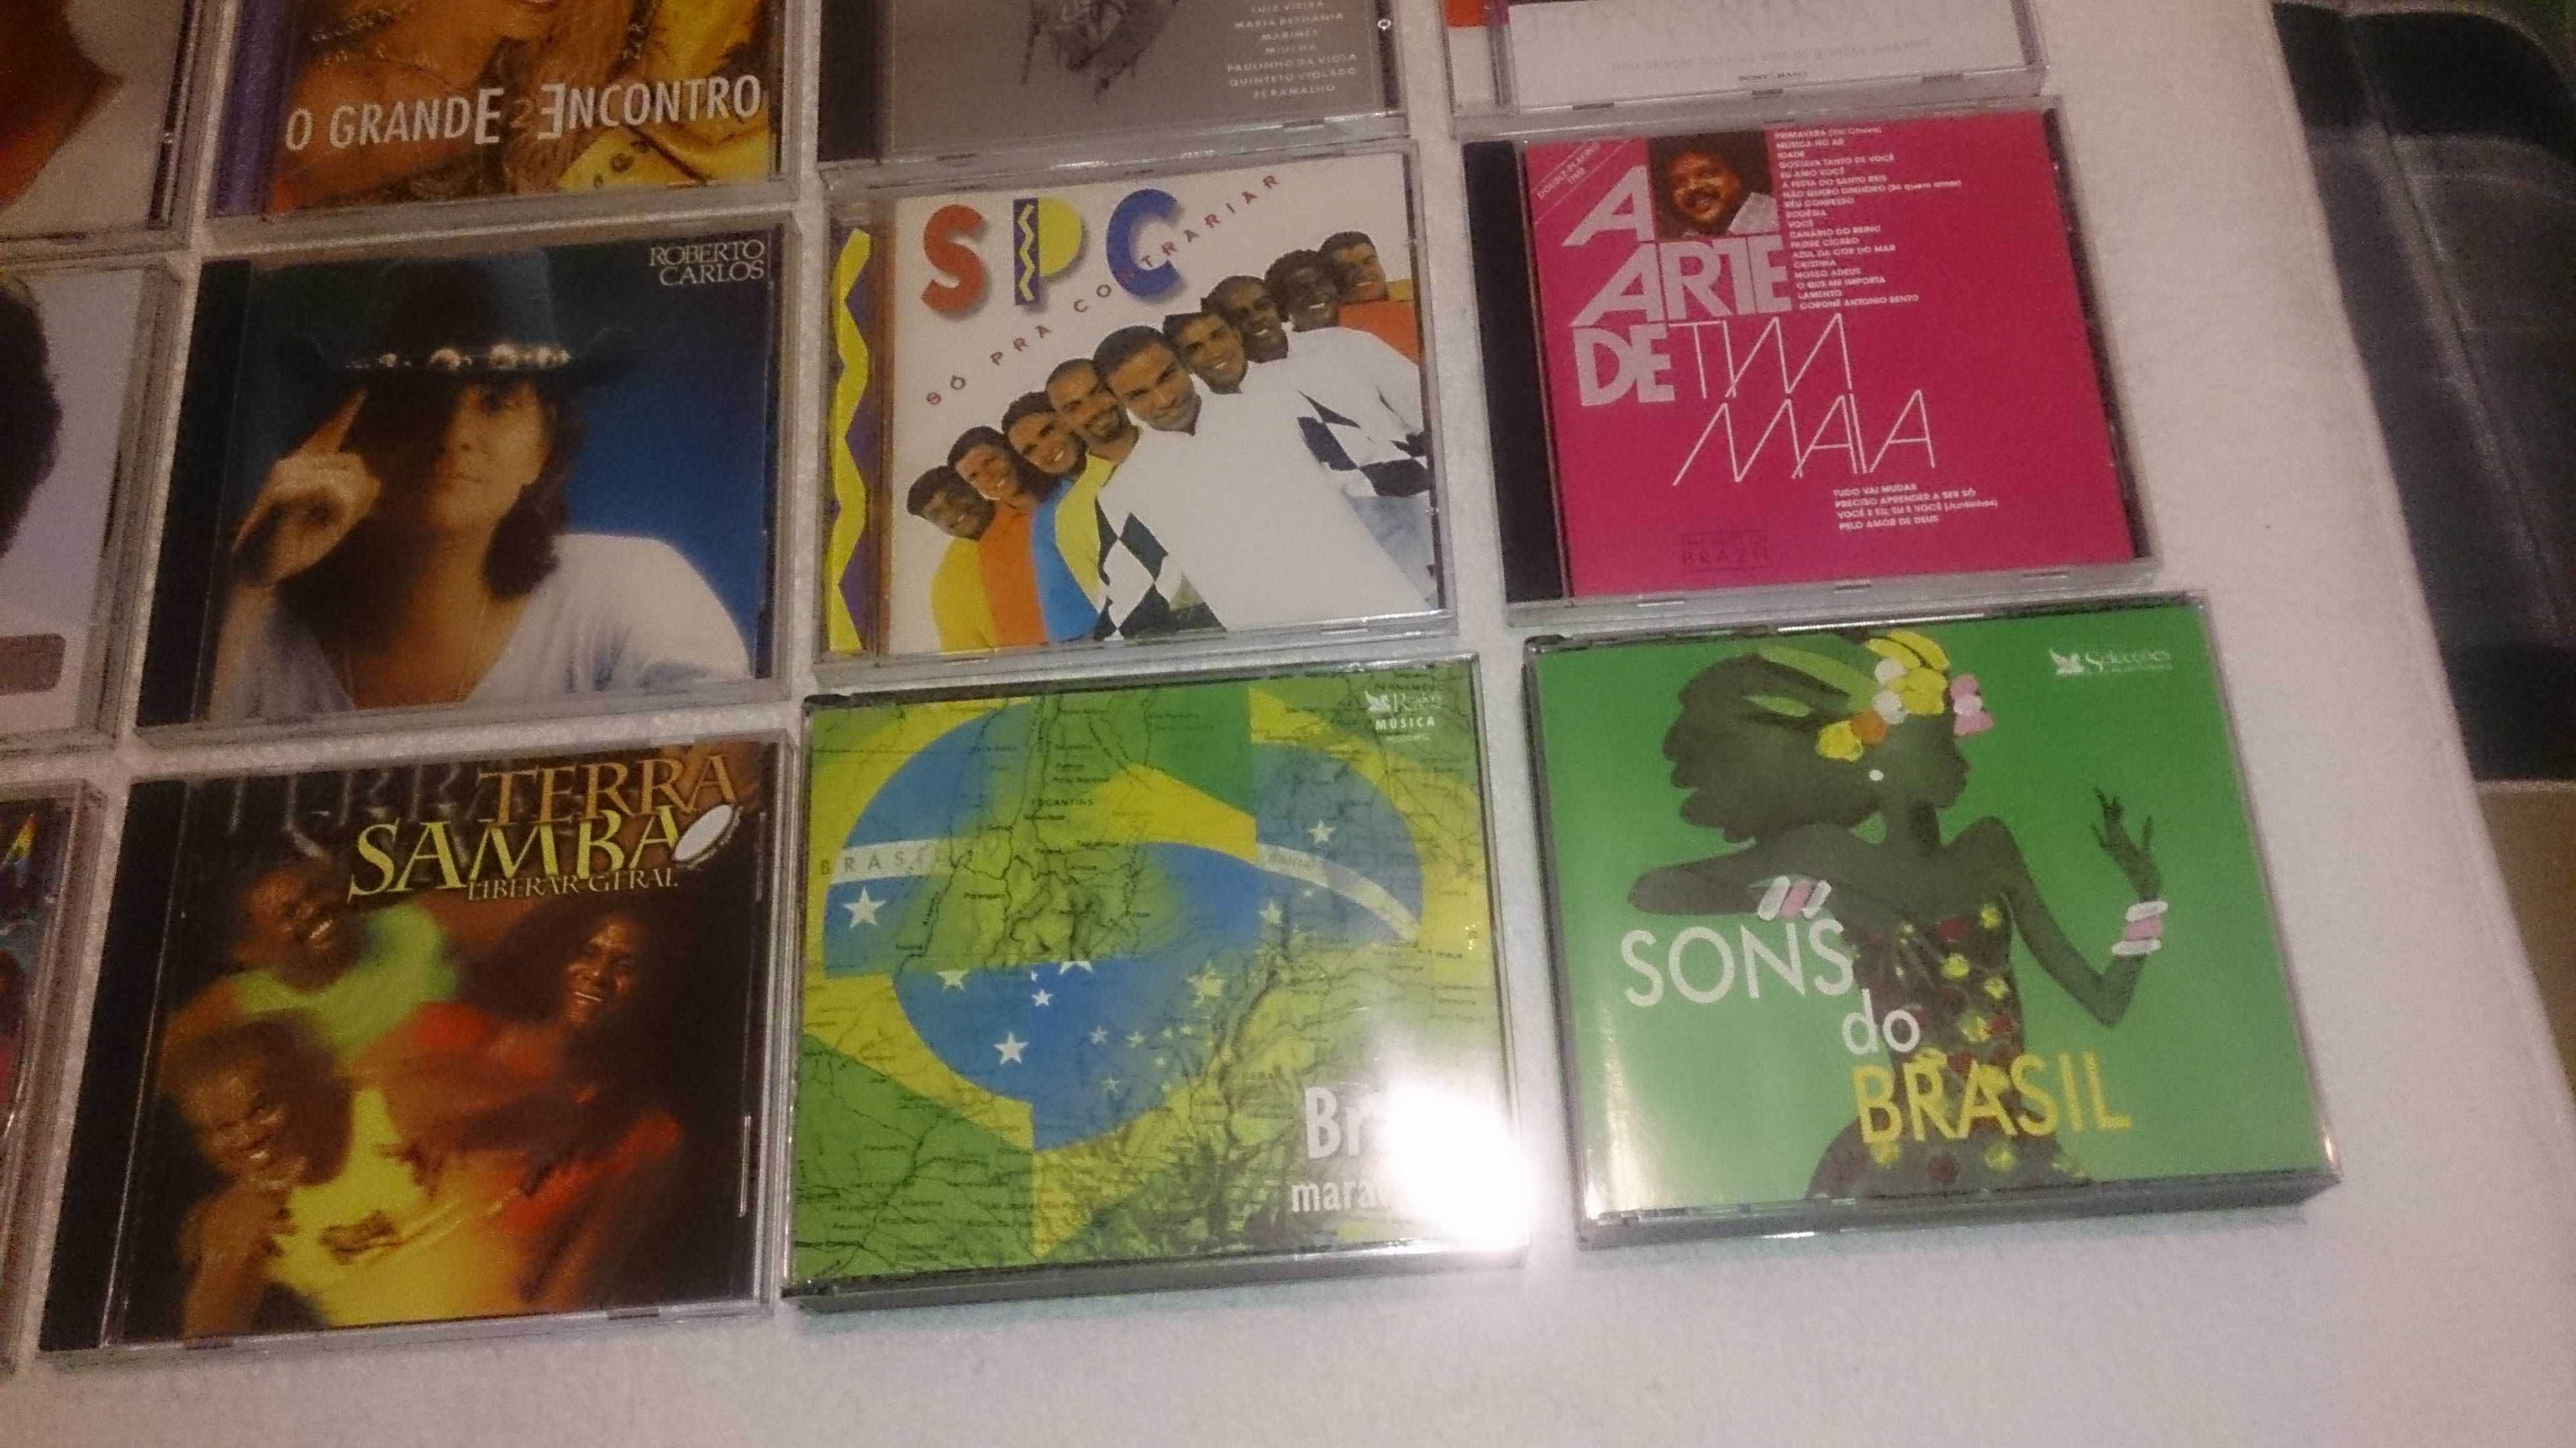 música brasileira, calcanhotto, alcione, jobim, terra samba -vários cd